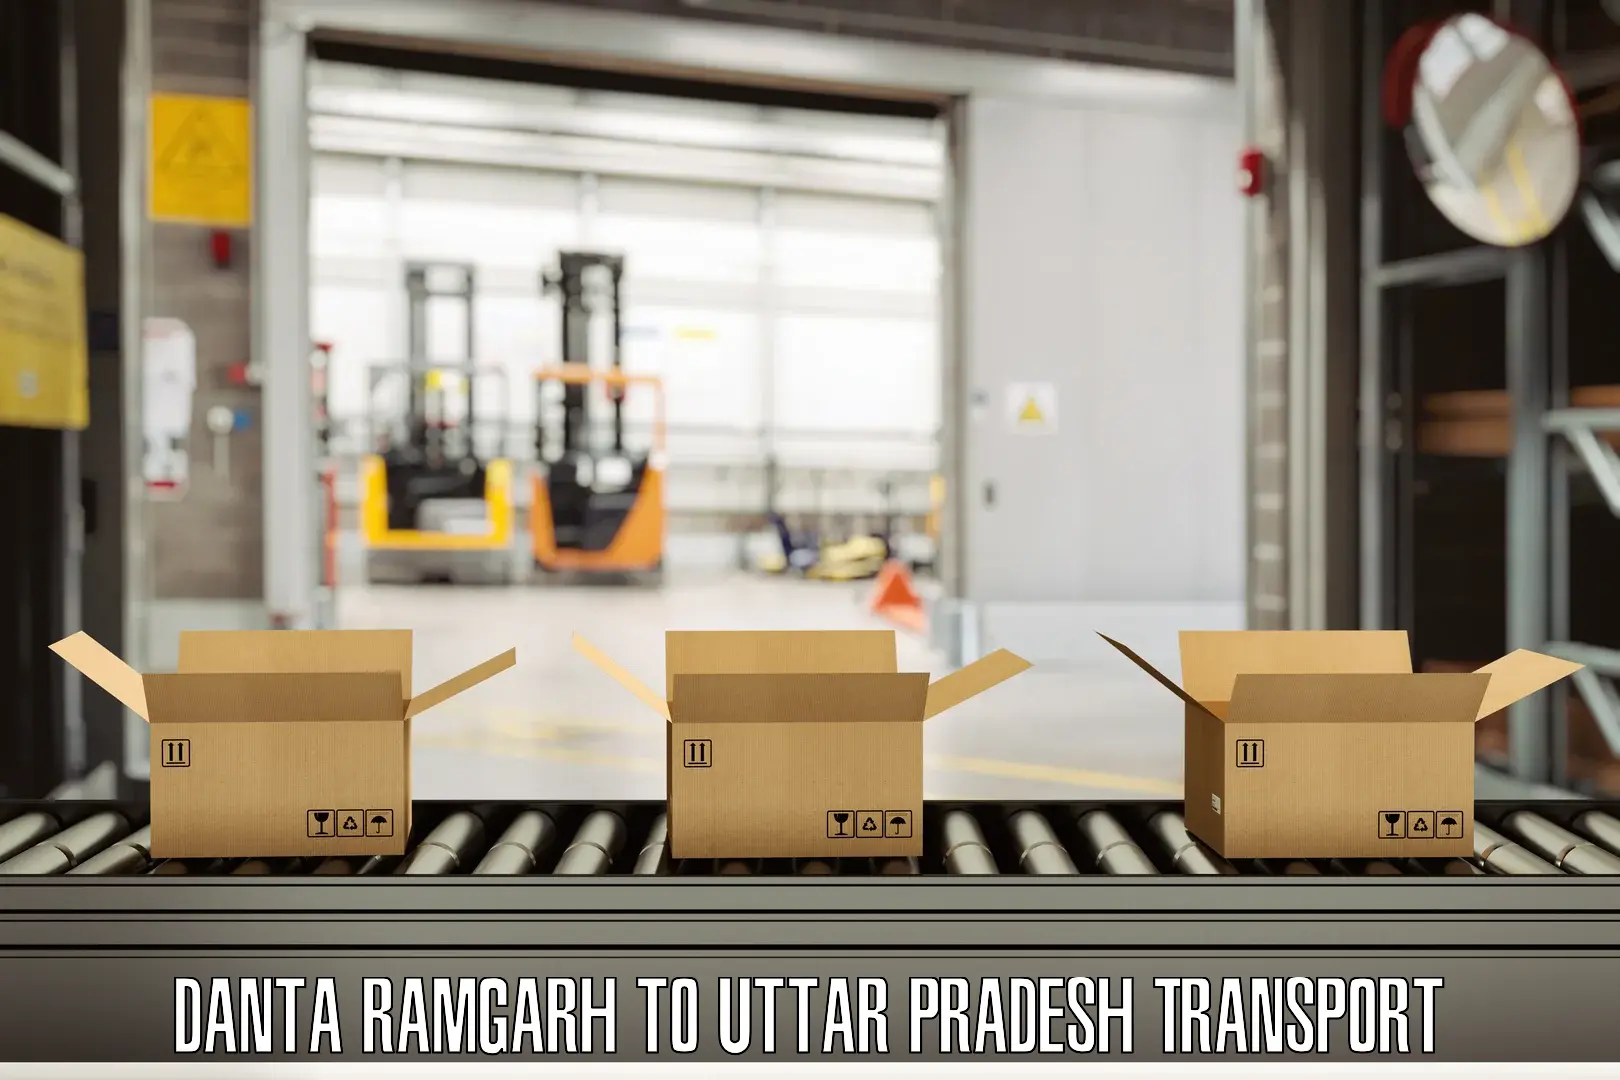 Container transportation services Danta Ramgarh to Hamirpur Uttar Pradesh